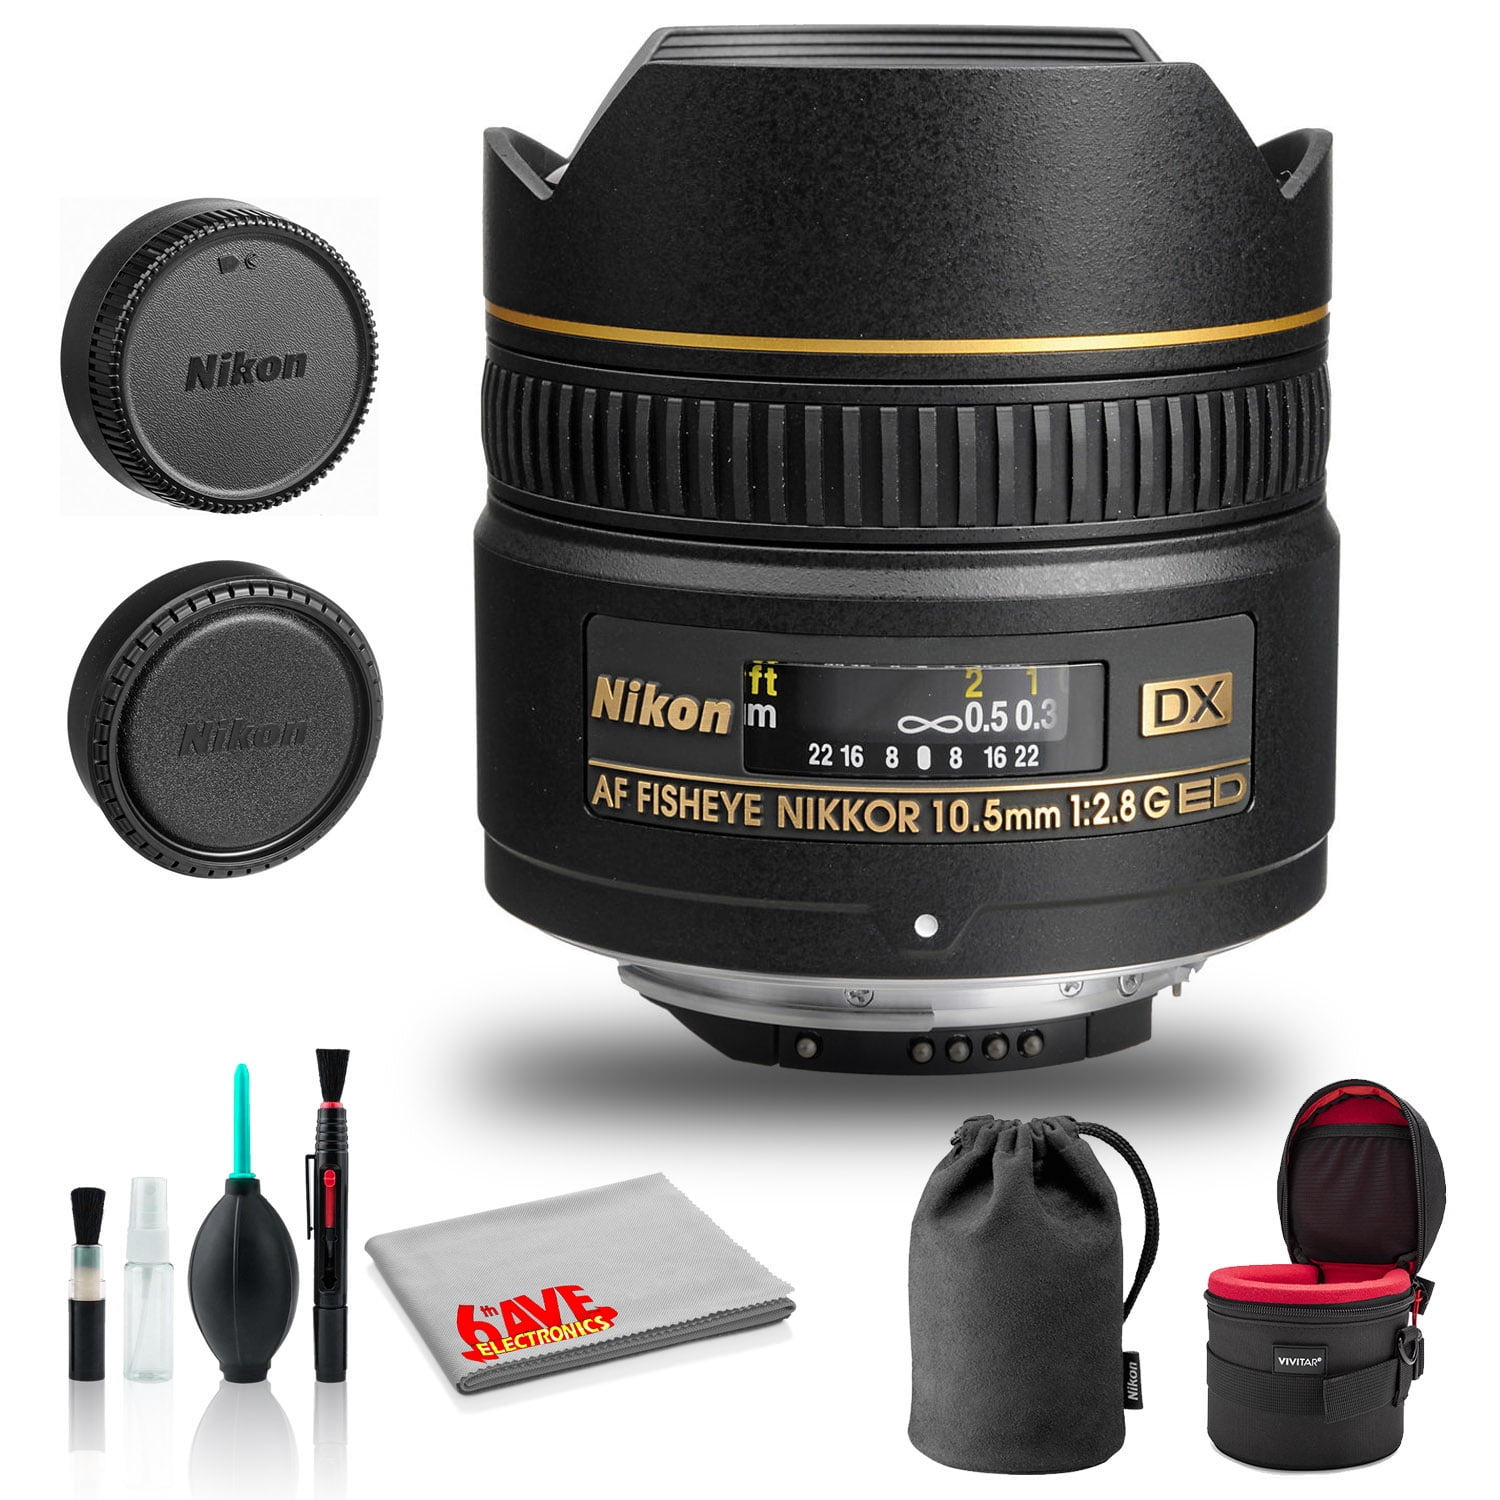 Nikon AF DX Fisheye-NIKKOR 10.5mm f/2.8G ED Lens (INTL Model) with Padded  Case